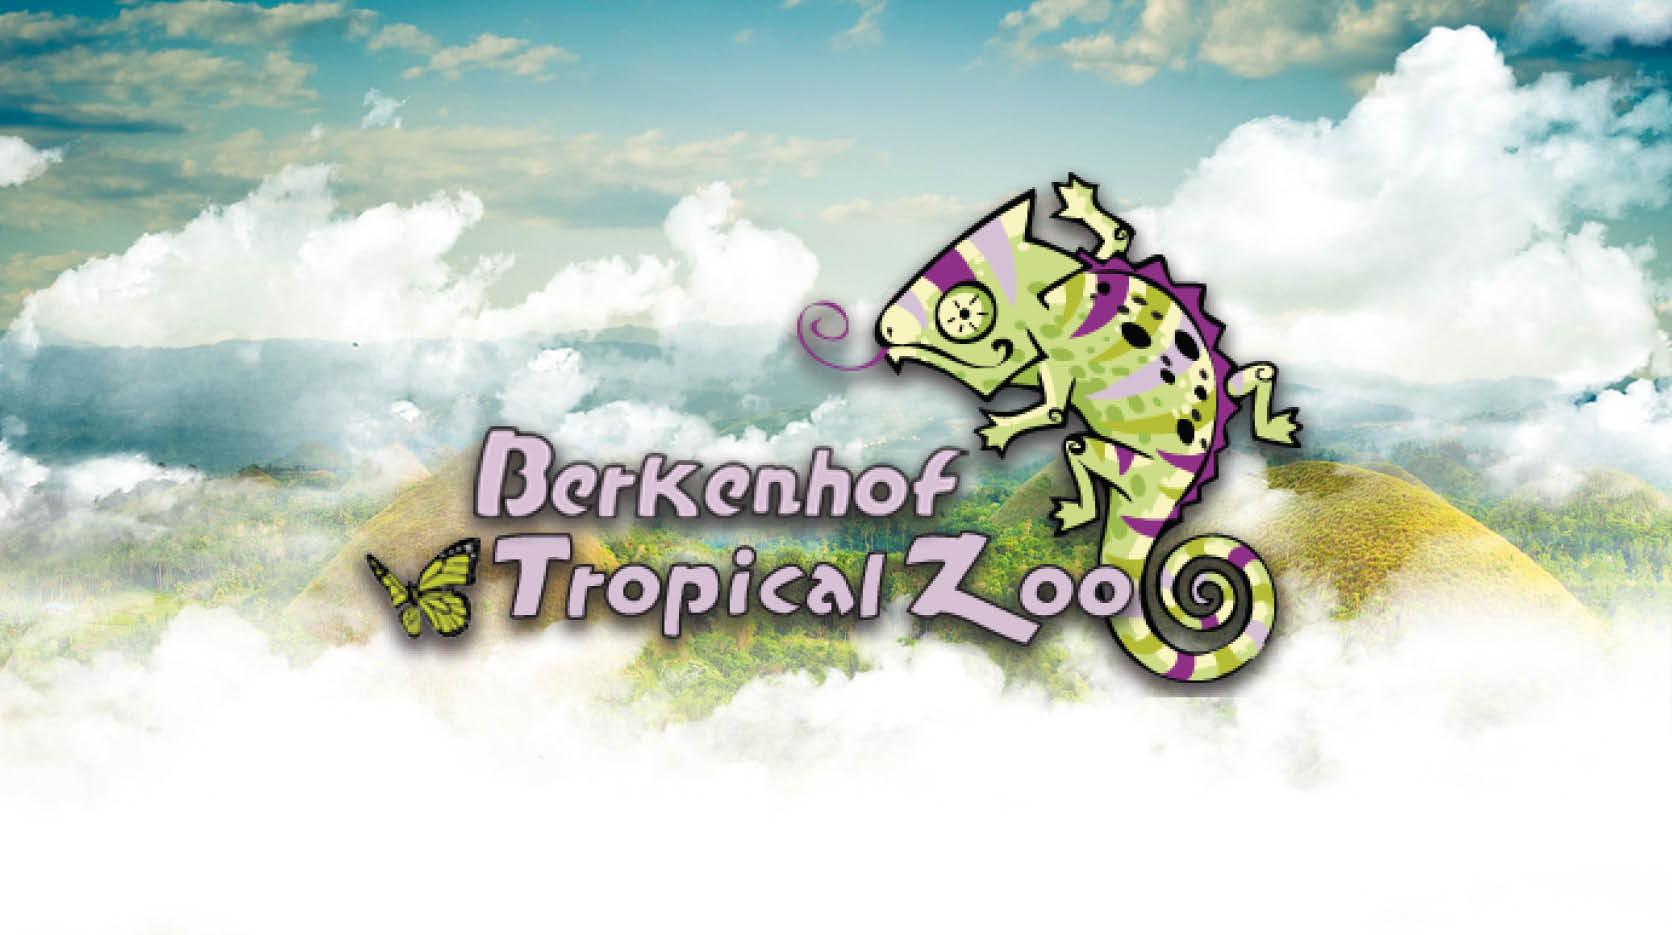 Berkenhof Tropical Zoo